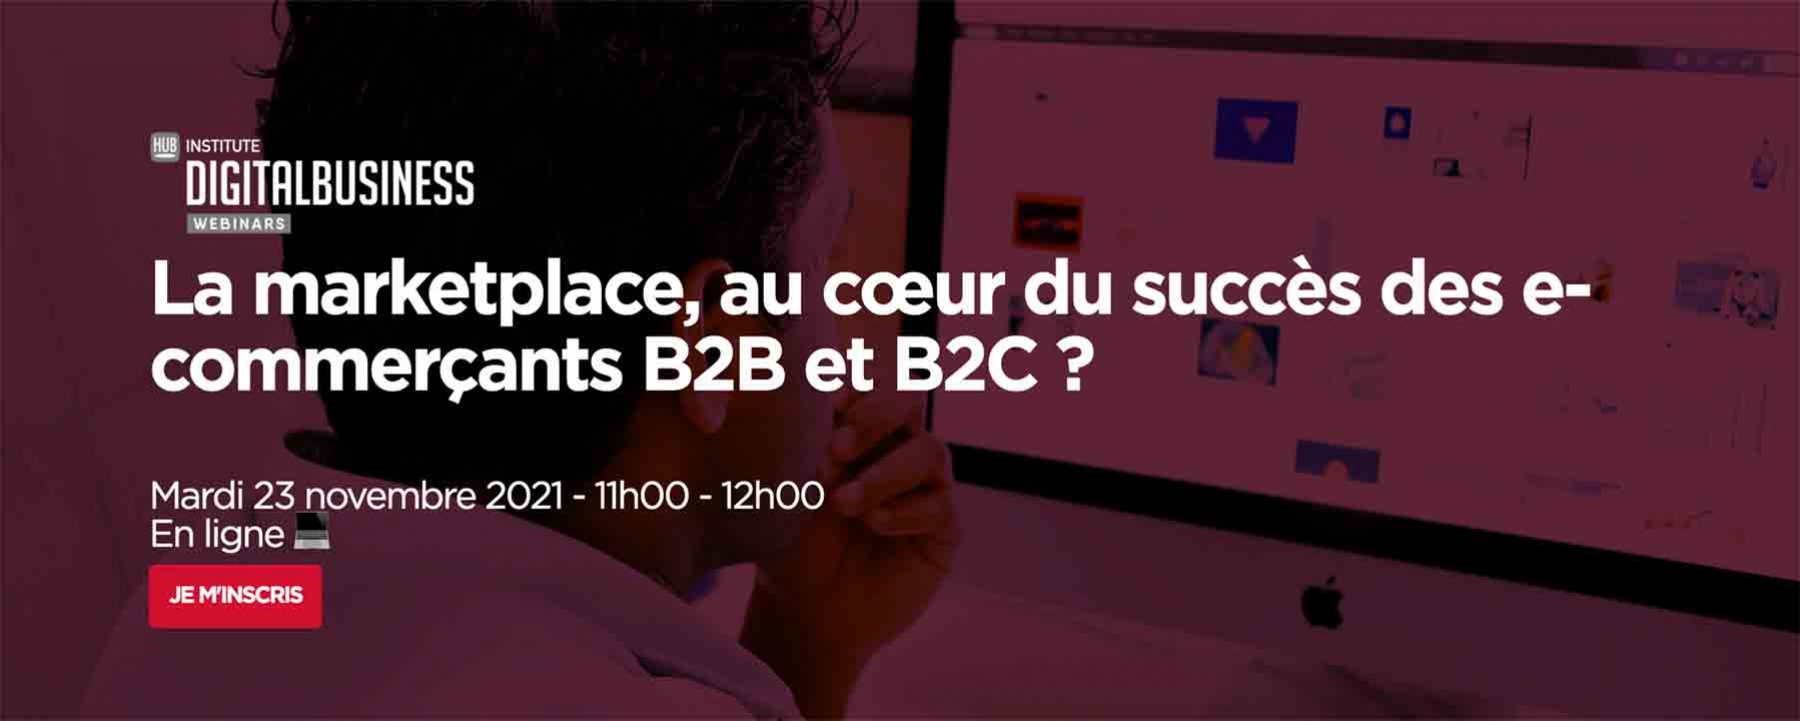 Webinar Adobe 23/11/21 logo digital business La marketplace, au cœur du succès des e-commerçants B2B et B2C ? le 23 novembre 2021 en ligne